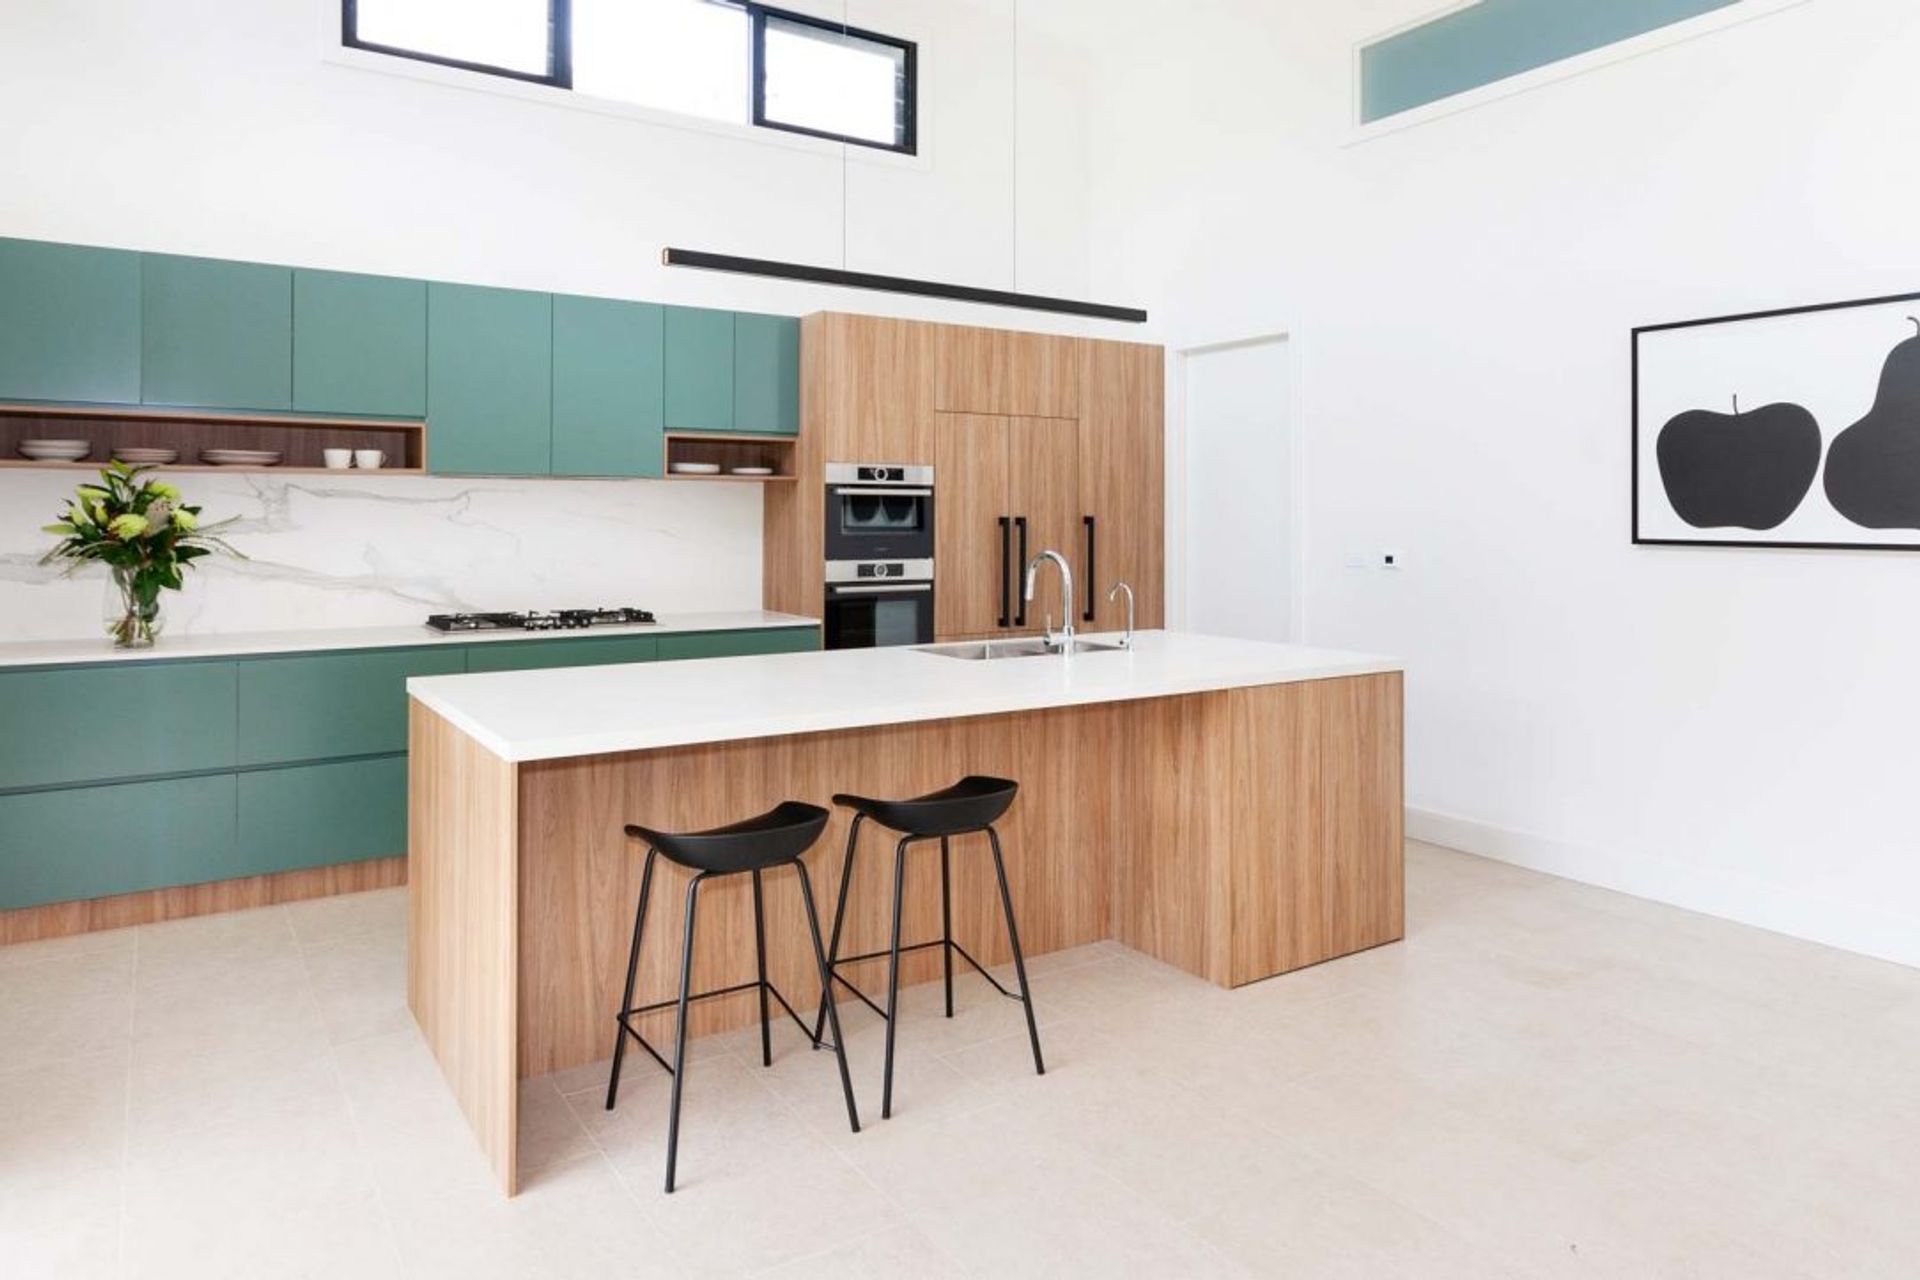 kitchen-design-sydney-modern-bosch-fisher-paykel-green-timber-premier-kitchens-04-1084x723.jpg